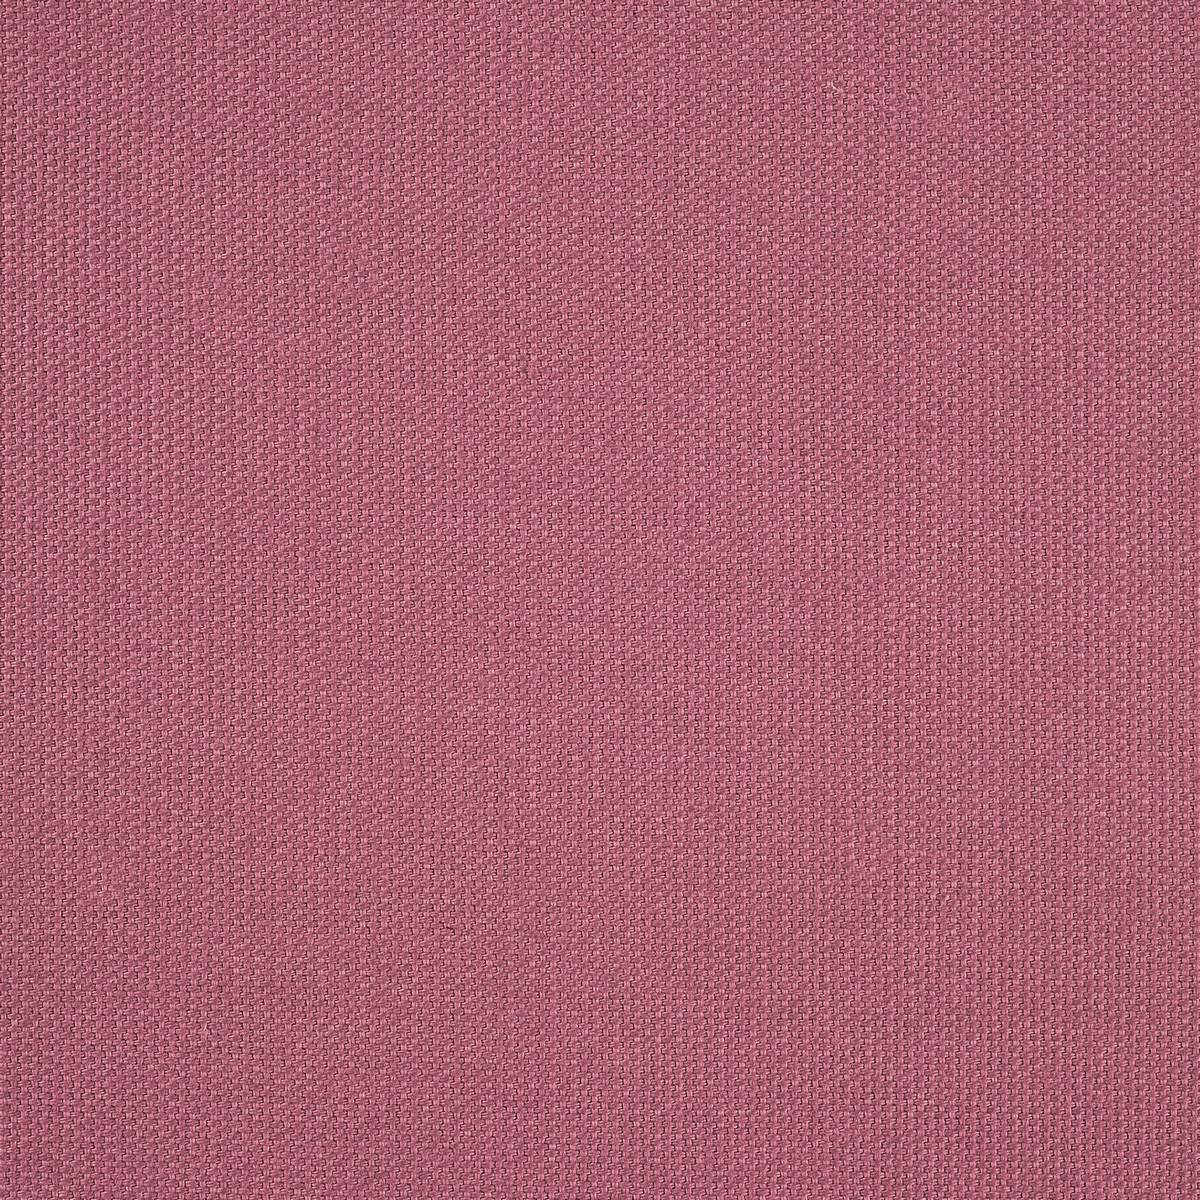 Papavera Plain Cameo Fabric by Sanderson